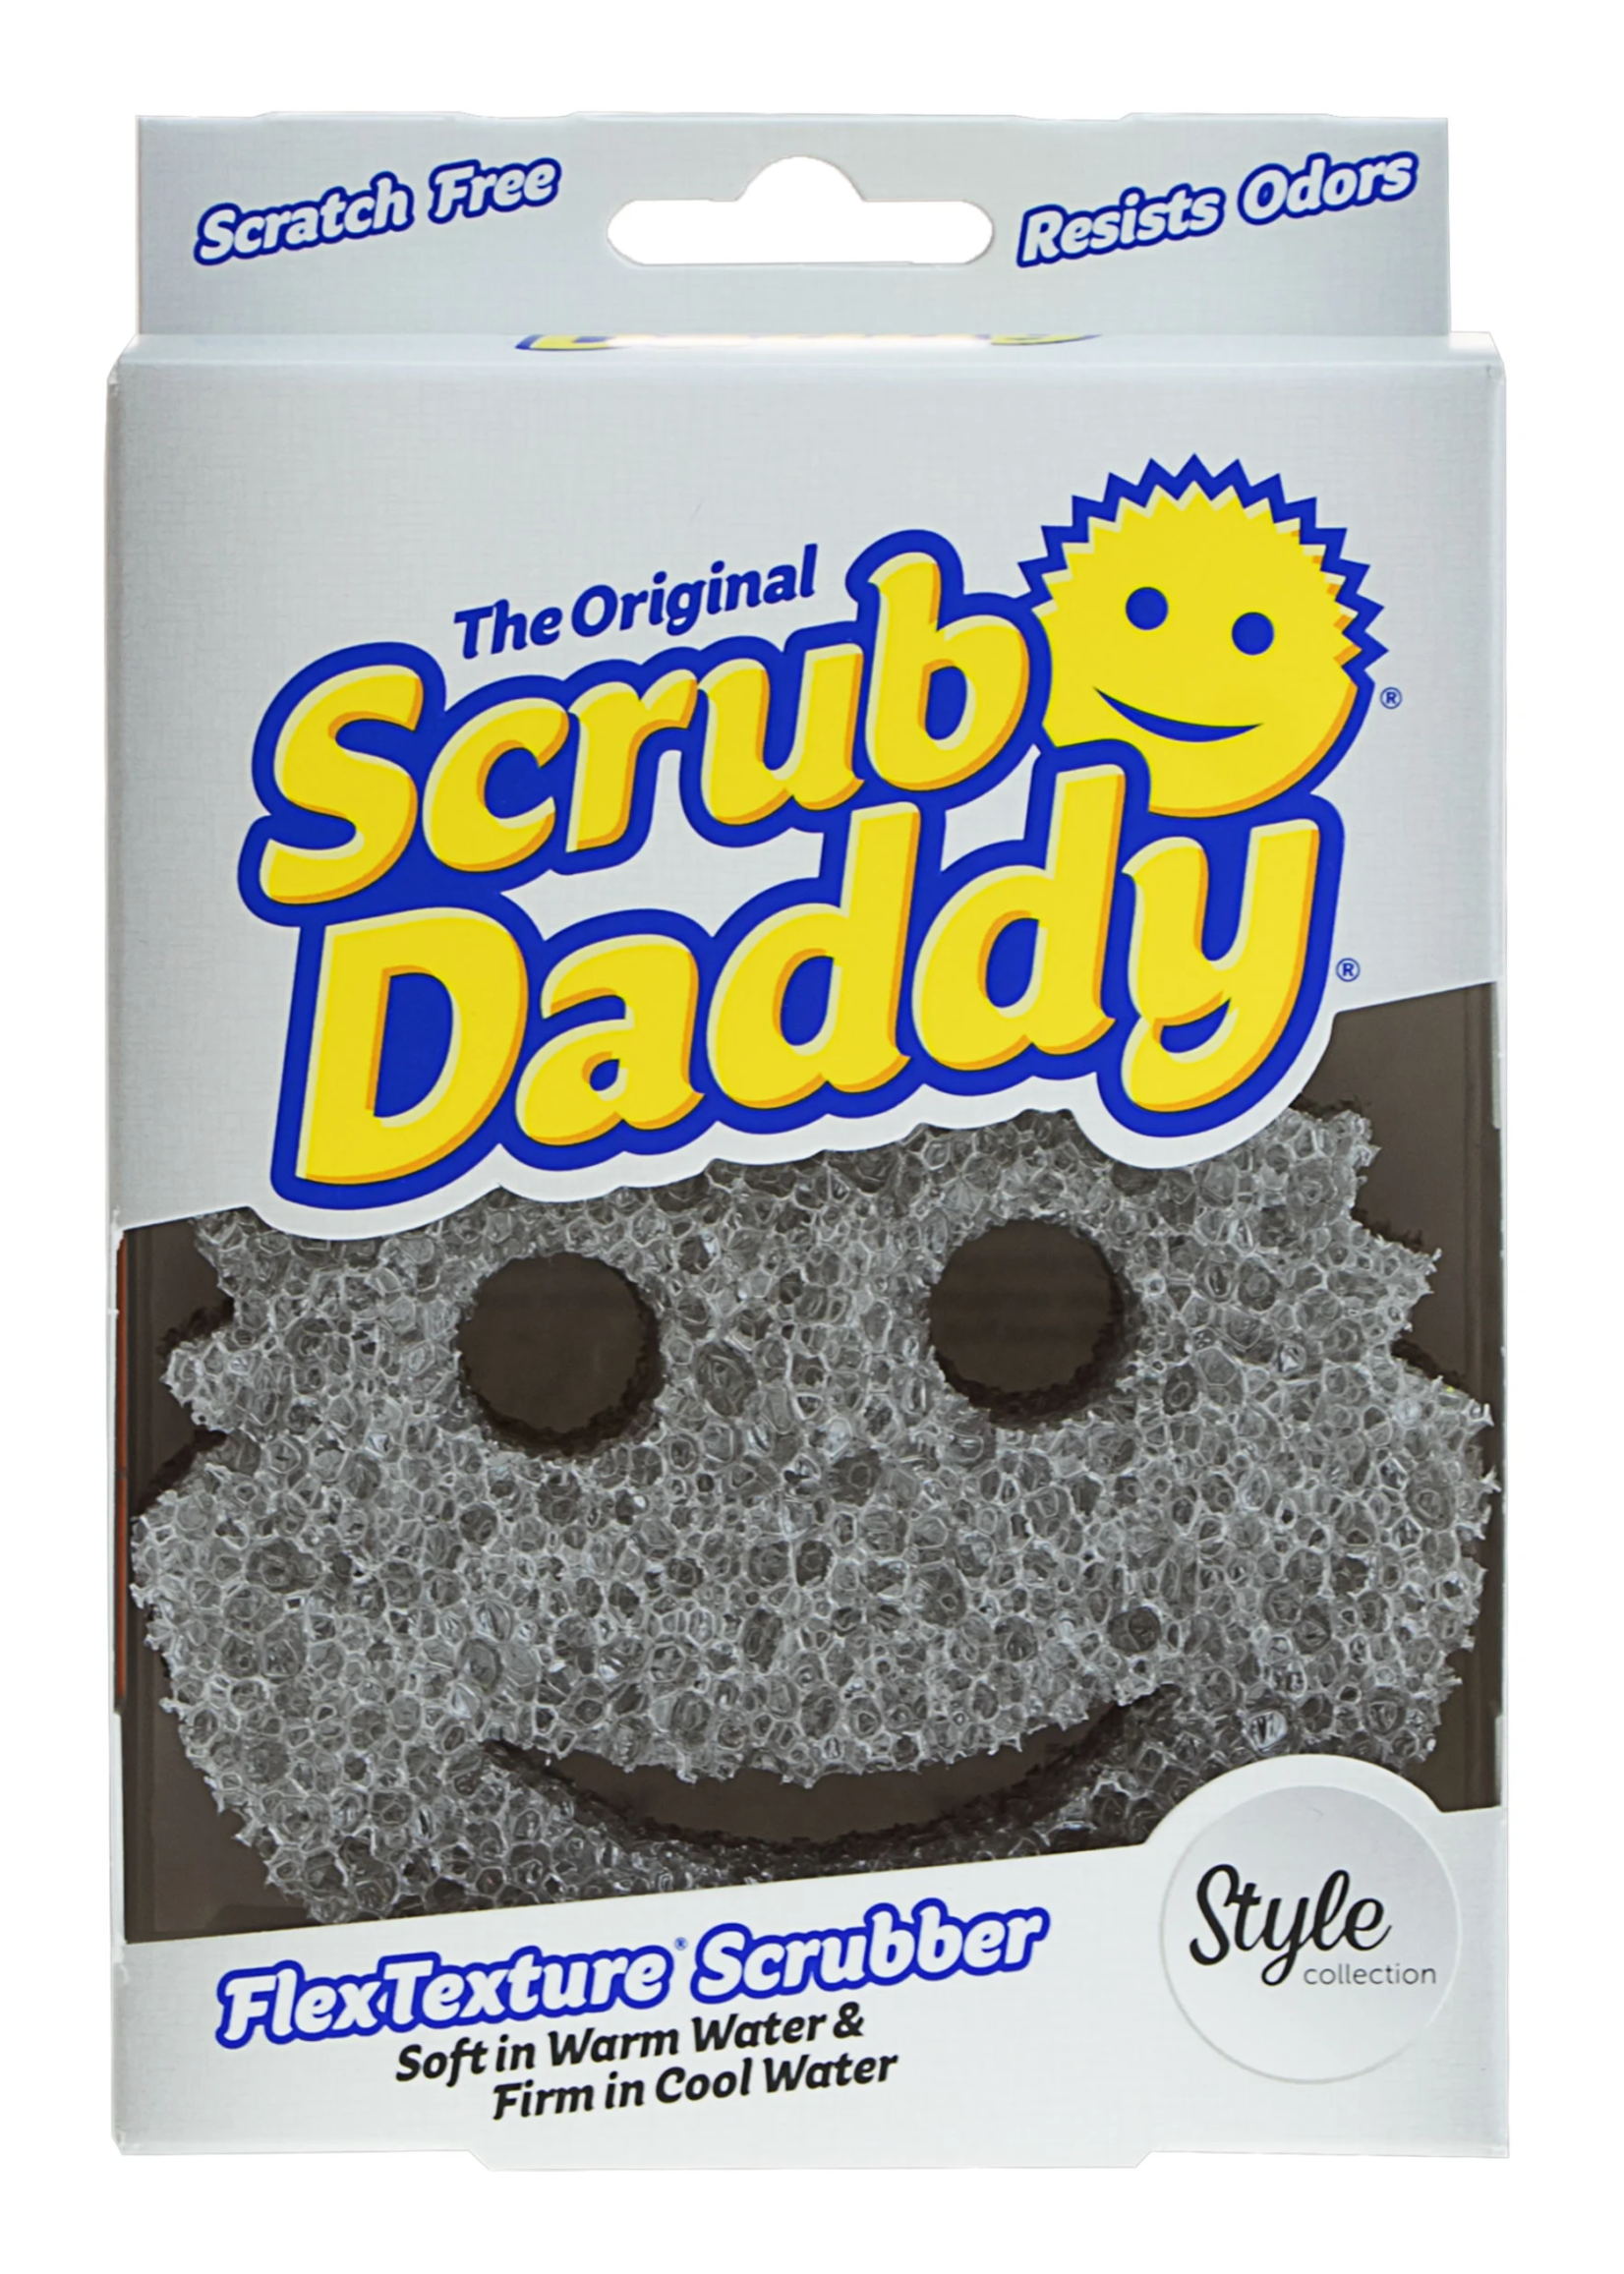 Scrub Daddy Scrub Daddy